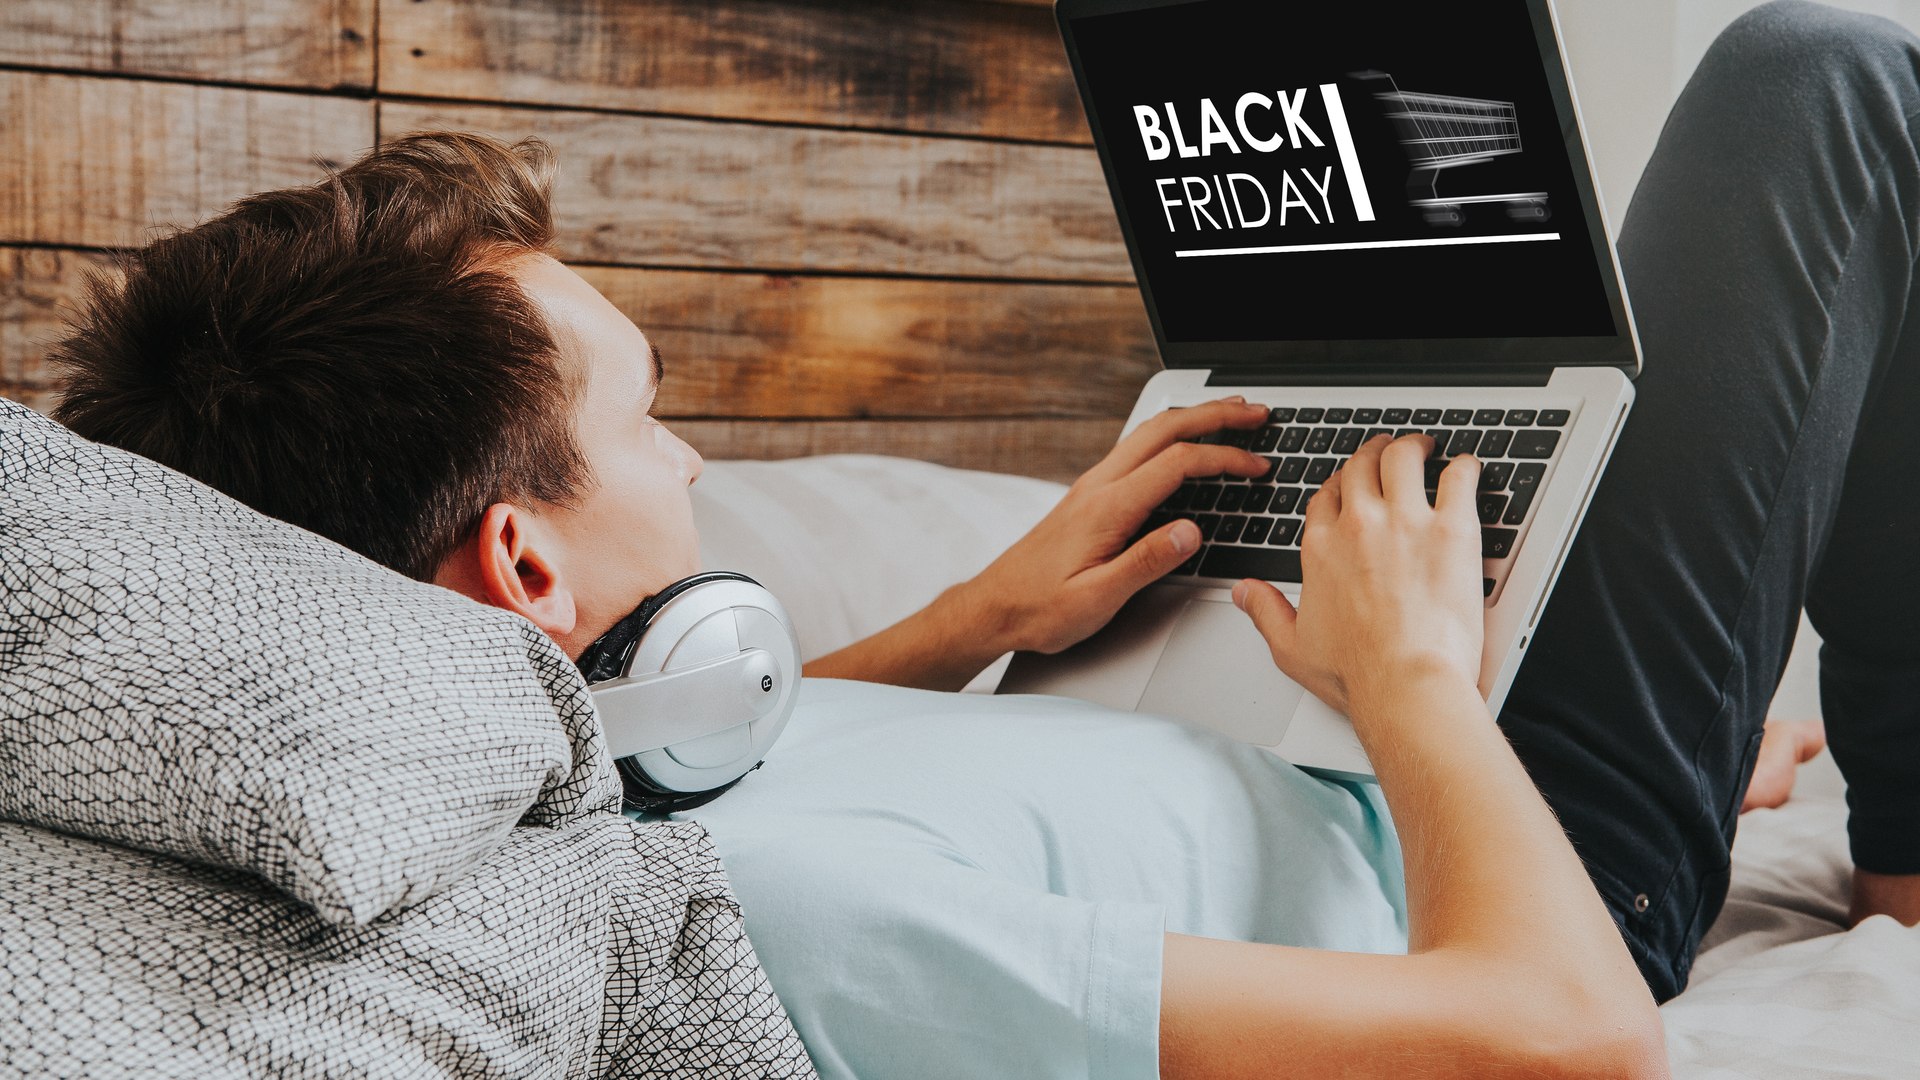 Black Friday com segurança nas compras on-line